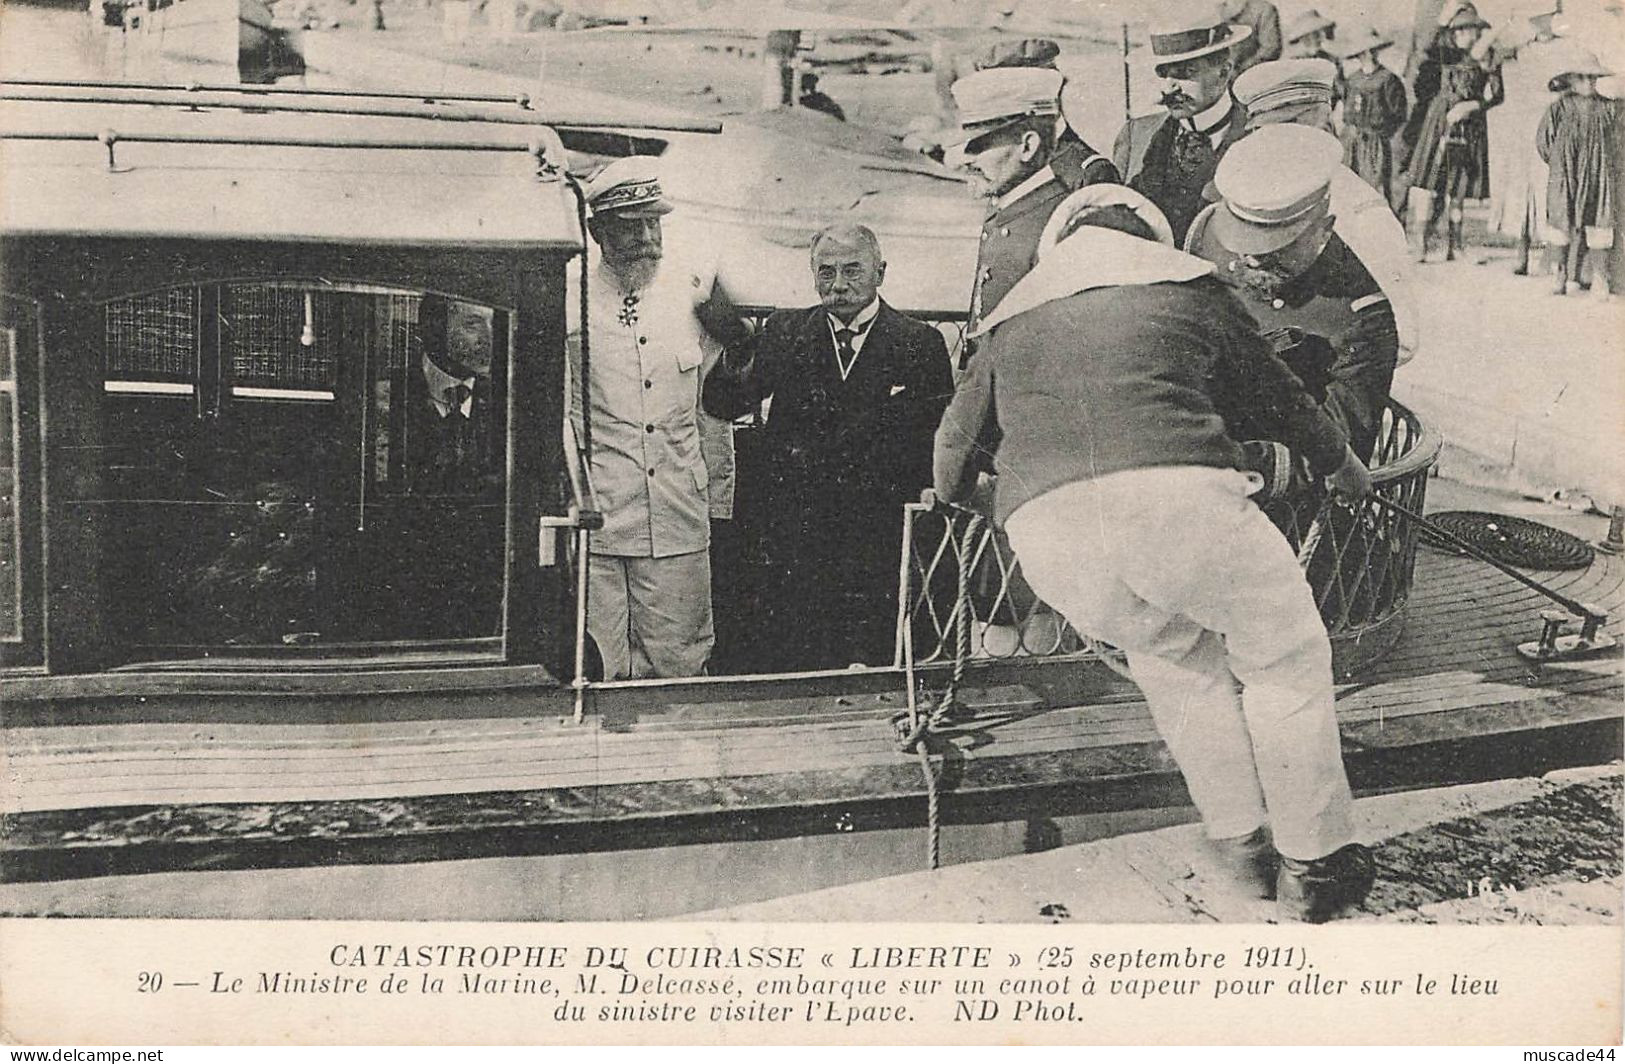 CATASTROPHE DU CUIRASSE LIBERTE - LE MINISTRE DE LA MARINE M. DELCASSE EMBARQUE SUR UN CANOT A VAPEUR - Warships